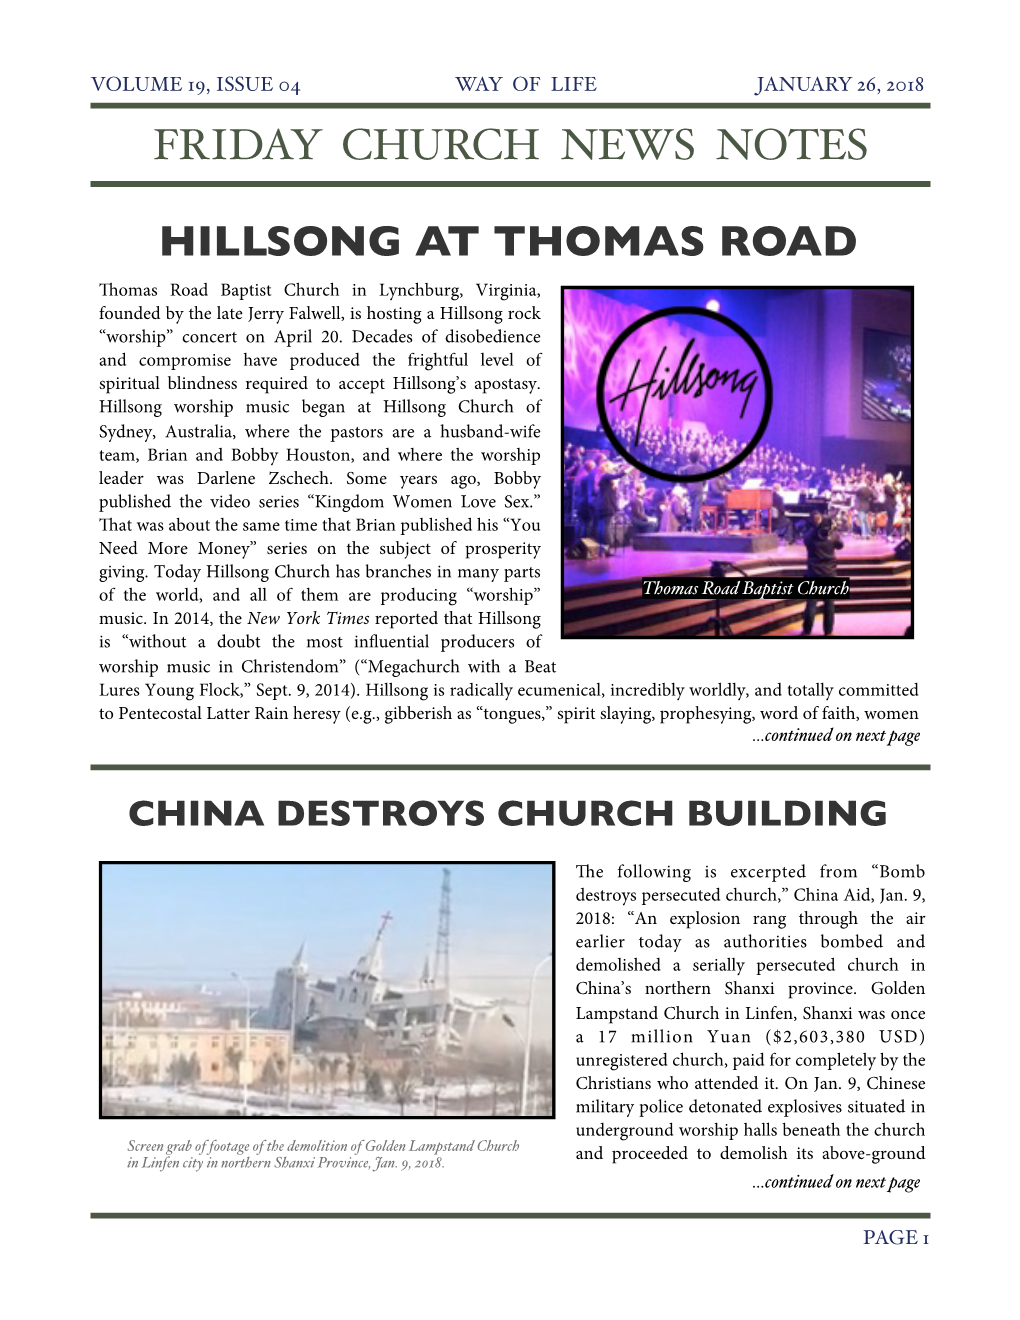 Friday Church News Notes Hillsong at Thomas Road